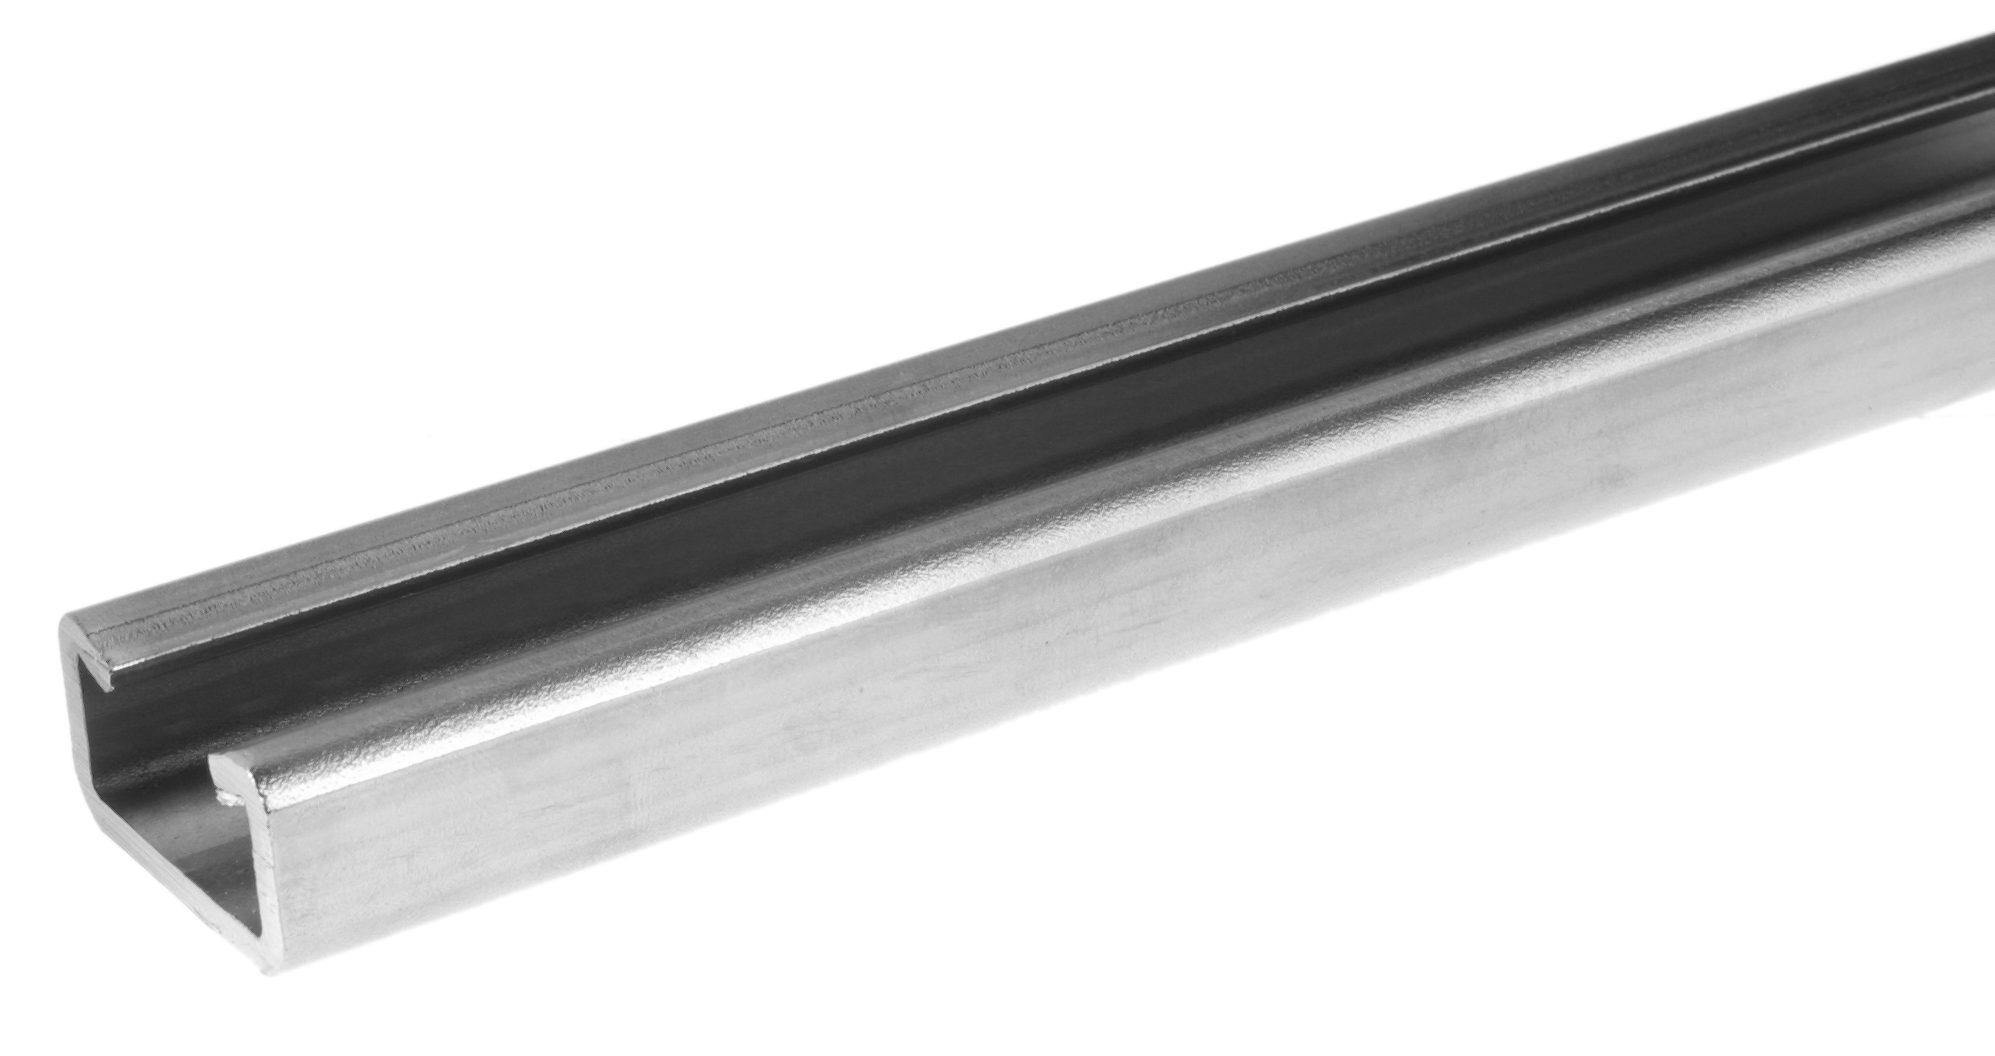 C30-profilskinne av varmgalvanisert stål 6 m